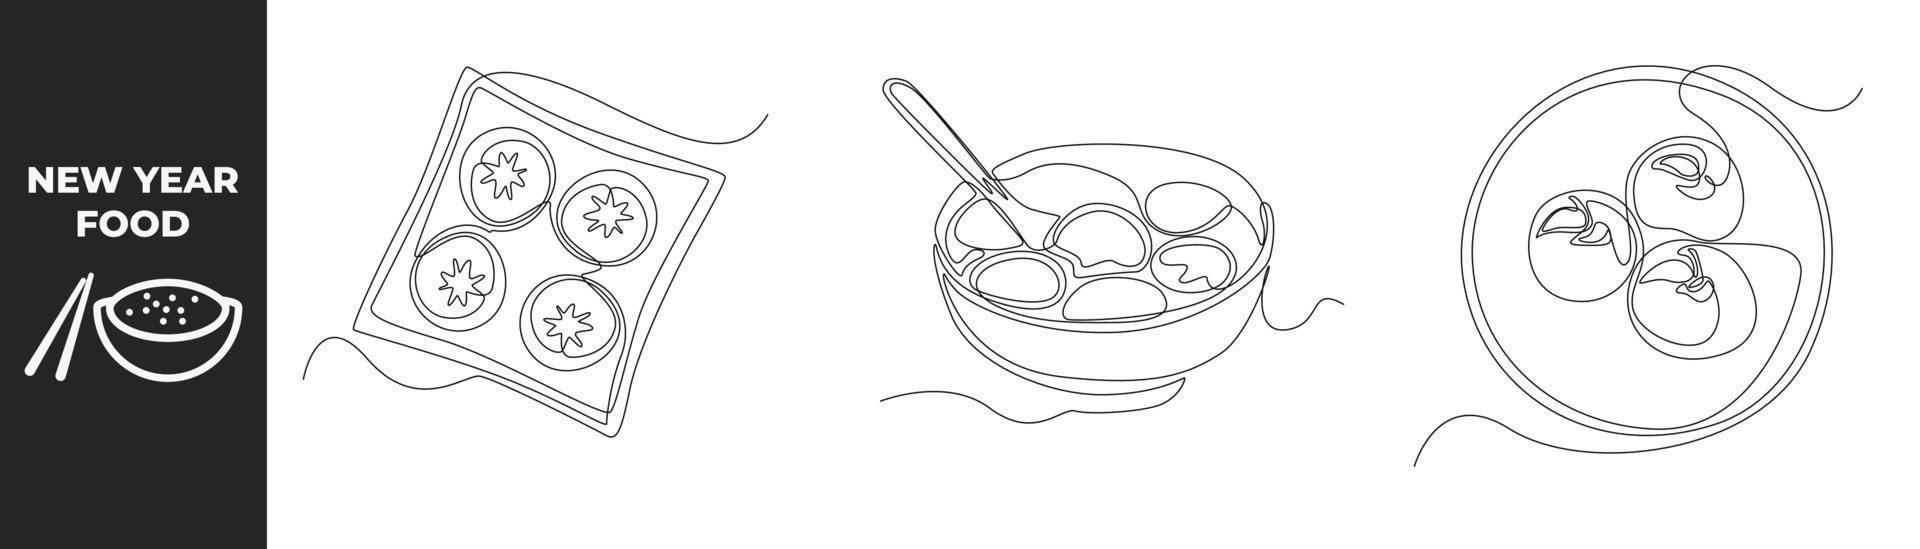 única linha desenhando o conceito de conjunto de comida de ano novo. vários bolos para comida de ano novo e bolinhos de arroz em tigela de porcelana. ilustração em vetor gráfico de desenho de desenho de linha contínua.